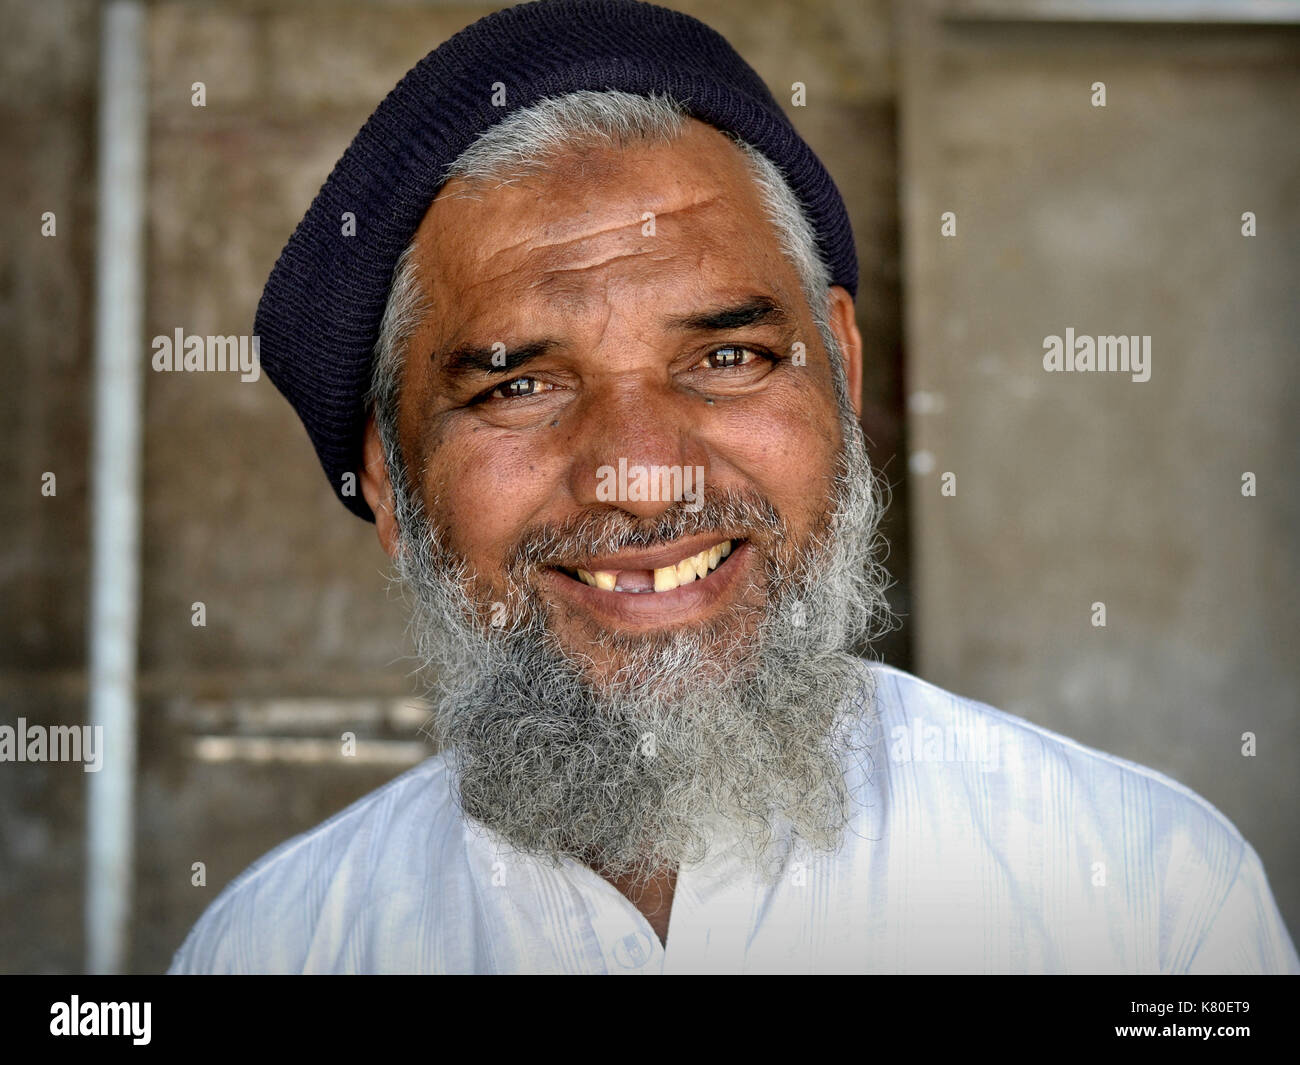 Älterer indischer Moslem-Mann mit islamischem Bart, Zahnlücke und muslimischem Gebetstich (Zebibah) auf der Stirn lächelt für die Kamera. Stockfoto